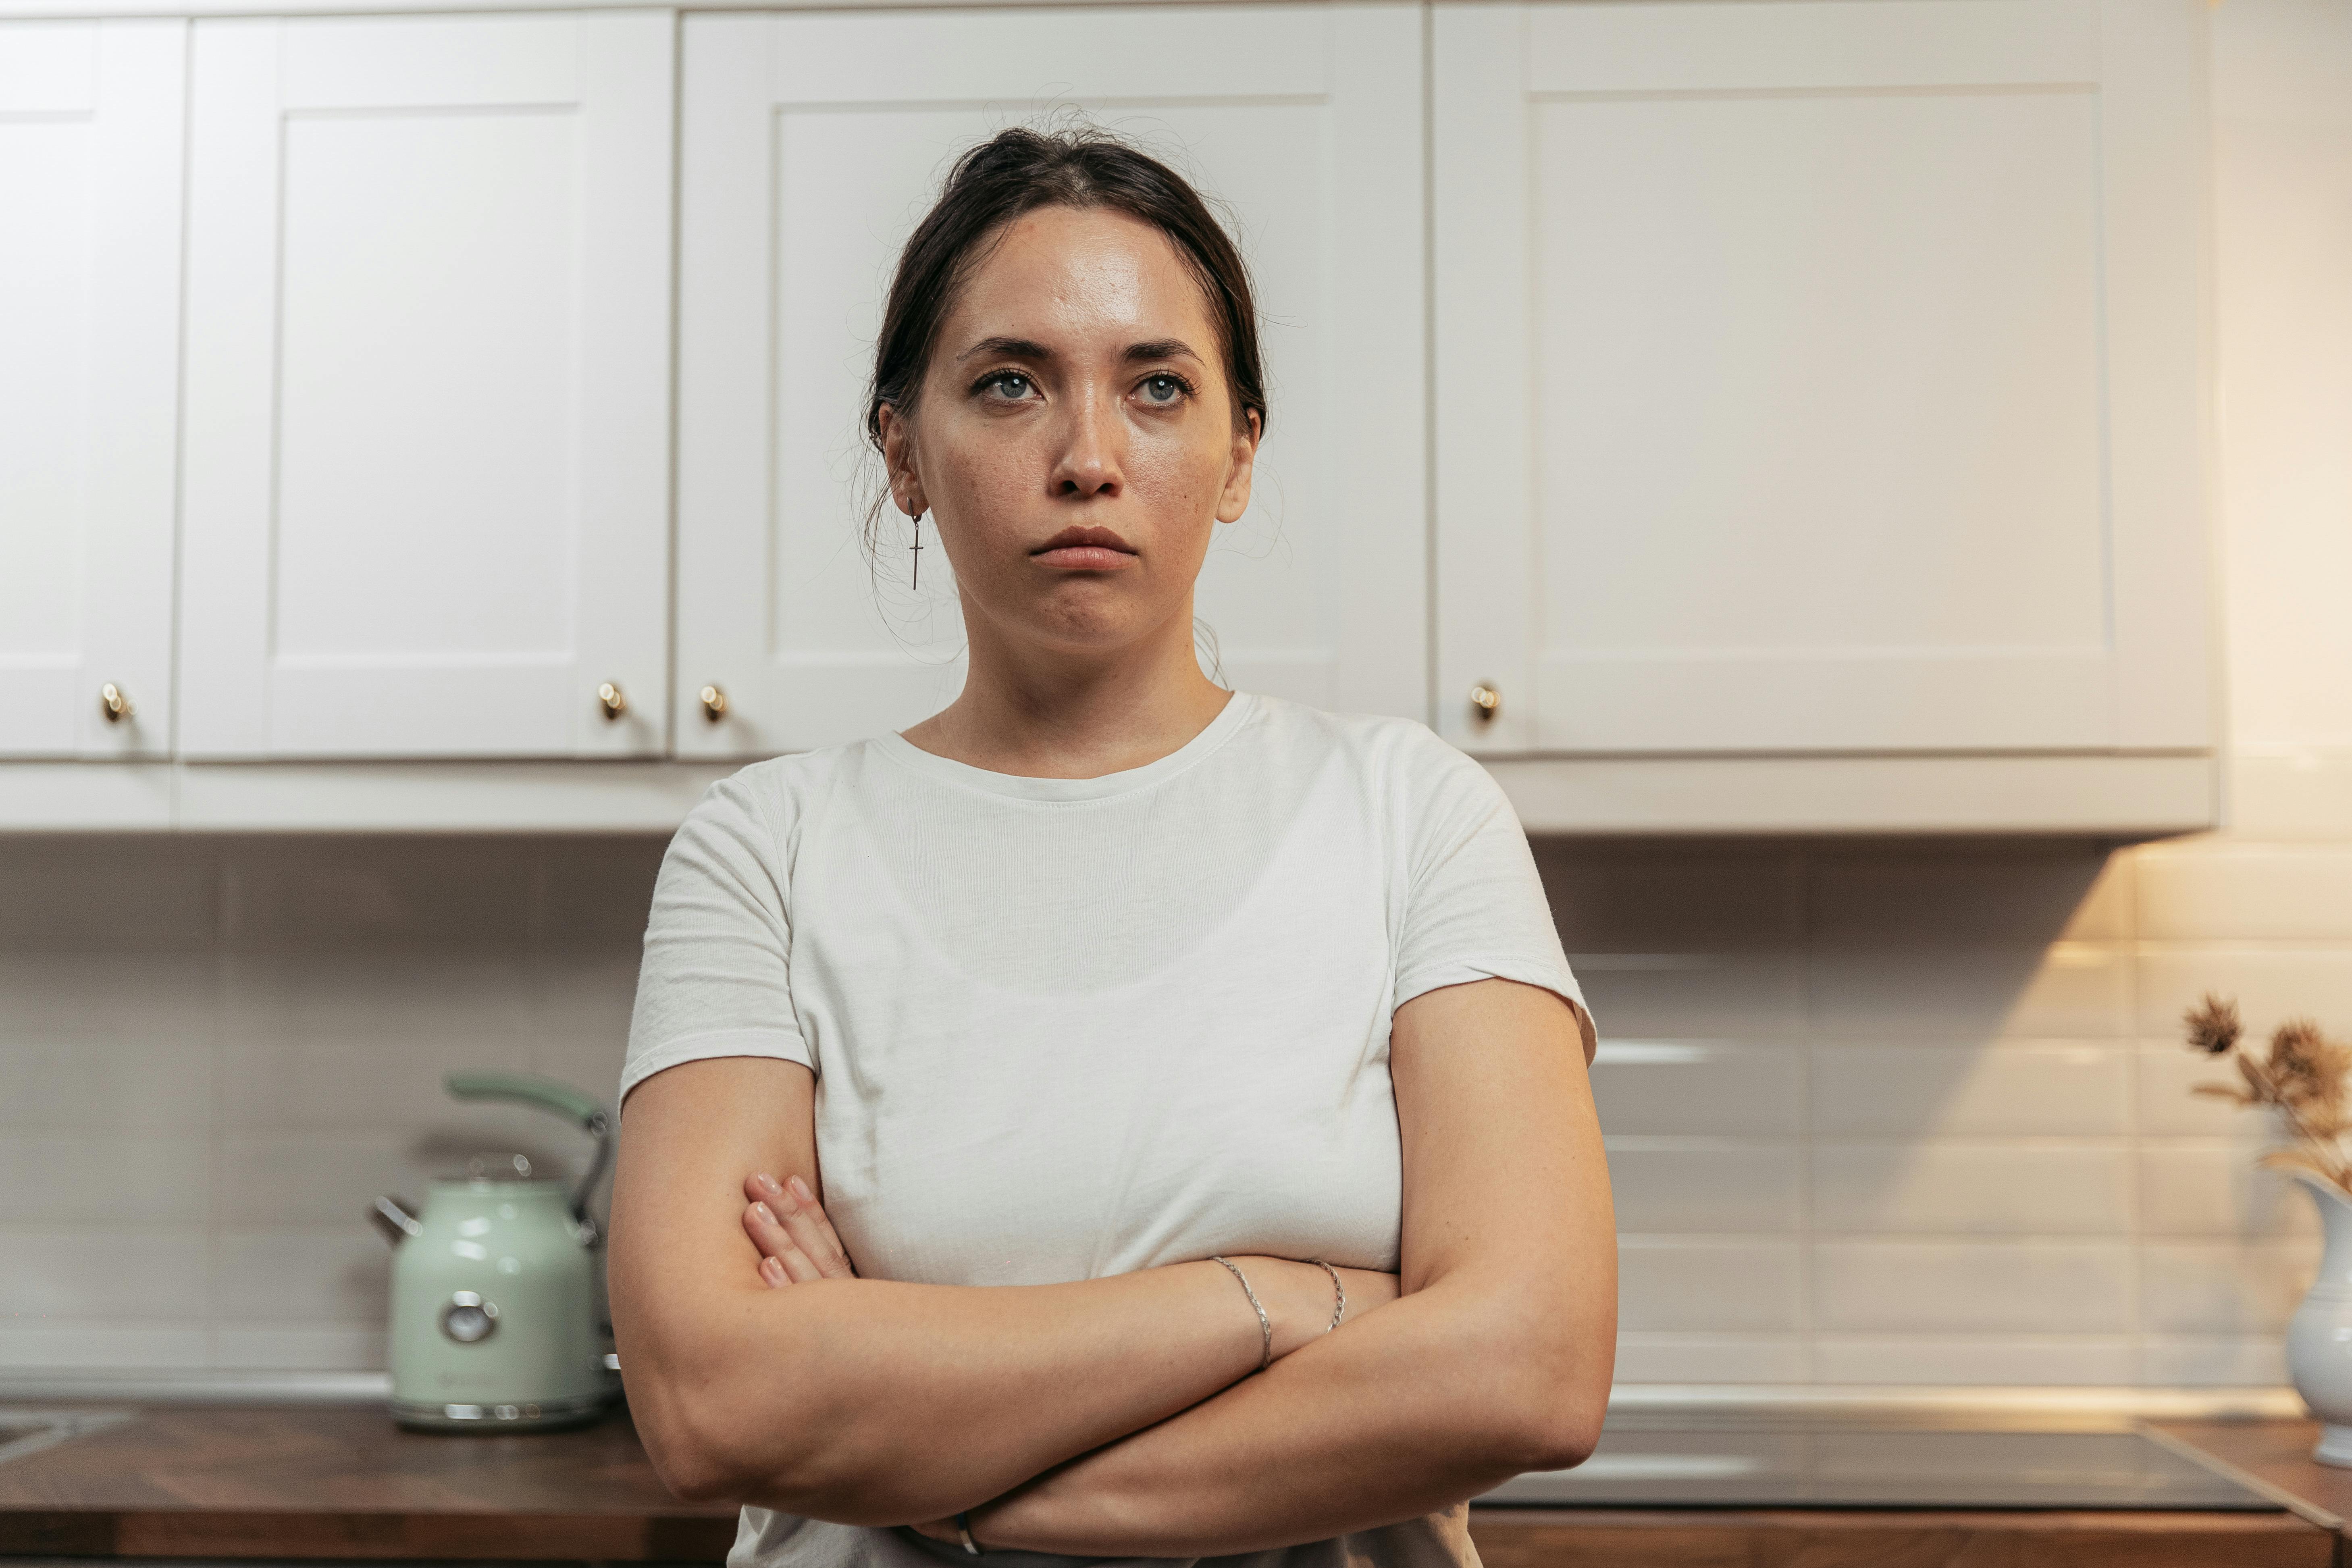 Eine Frau, die in der Küche steht und sich aufregt | Quelle: Pexels